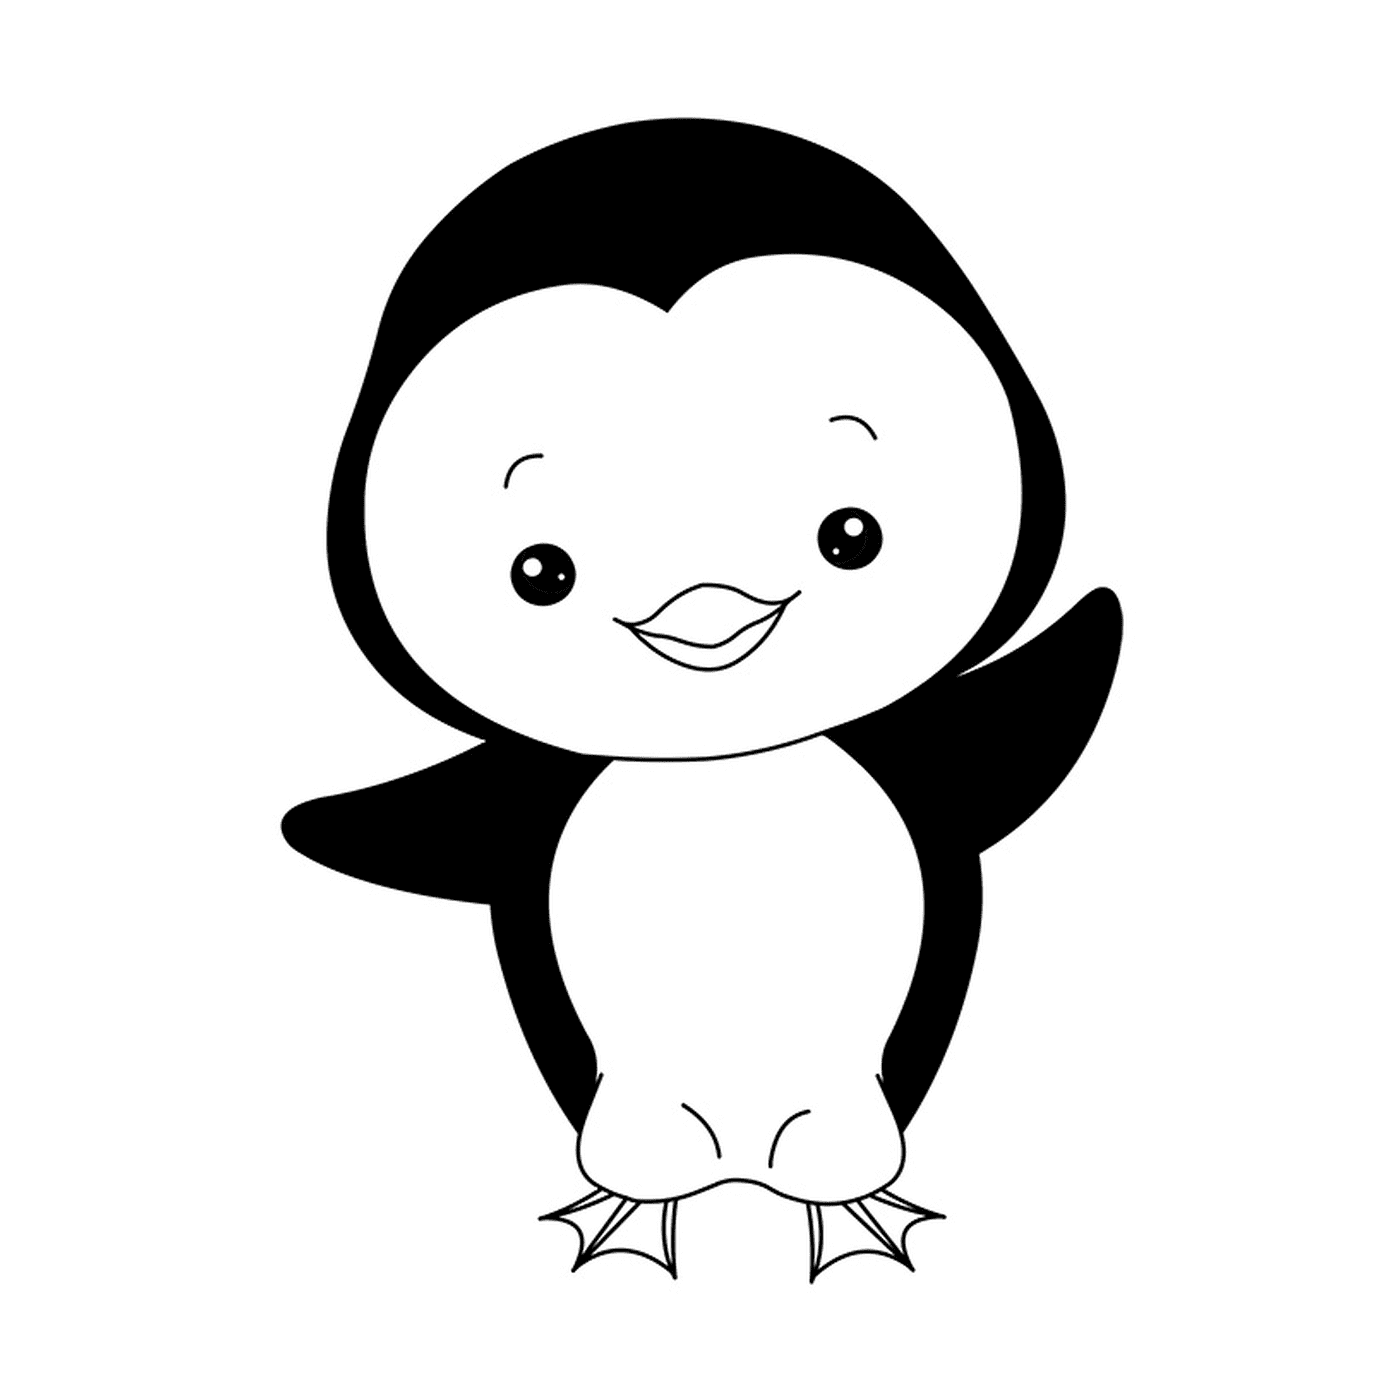  一只幼企鹅的图像 